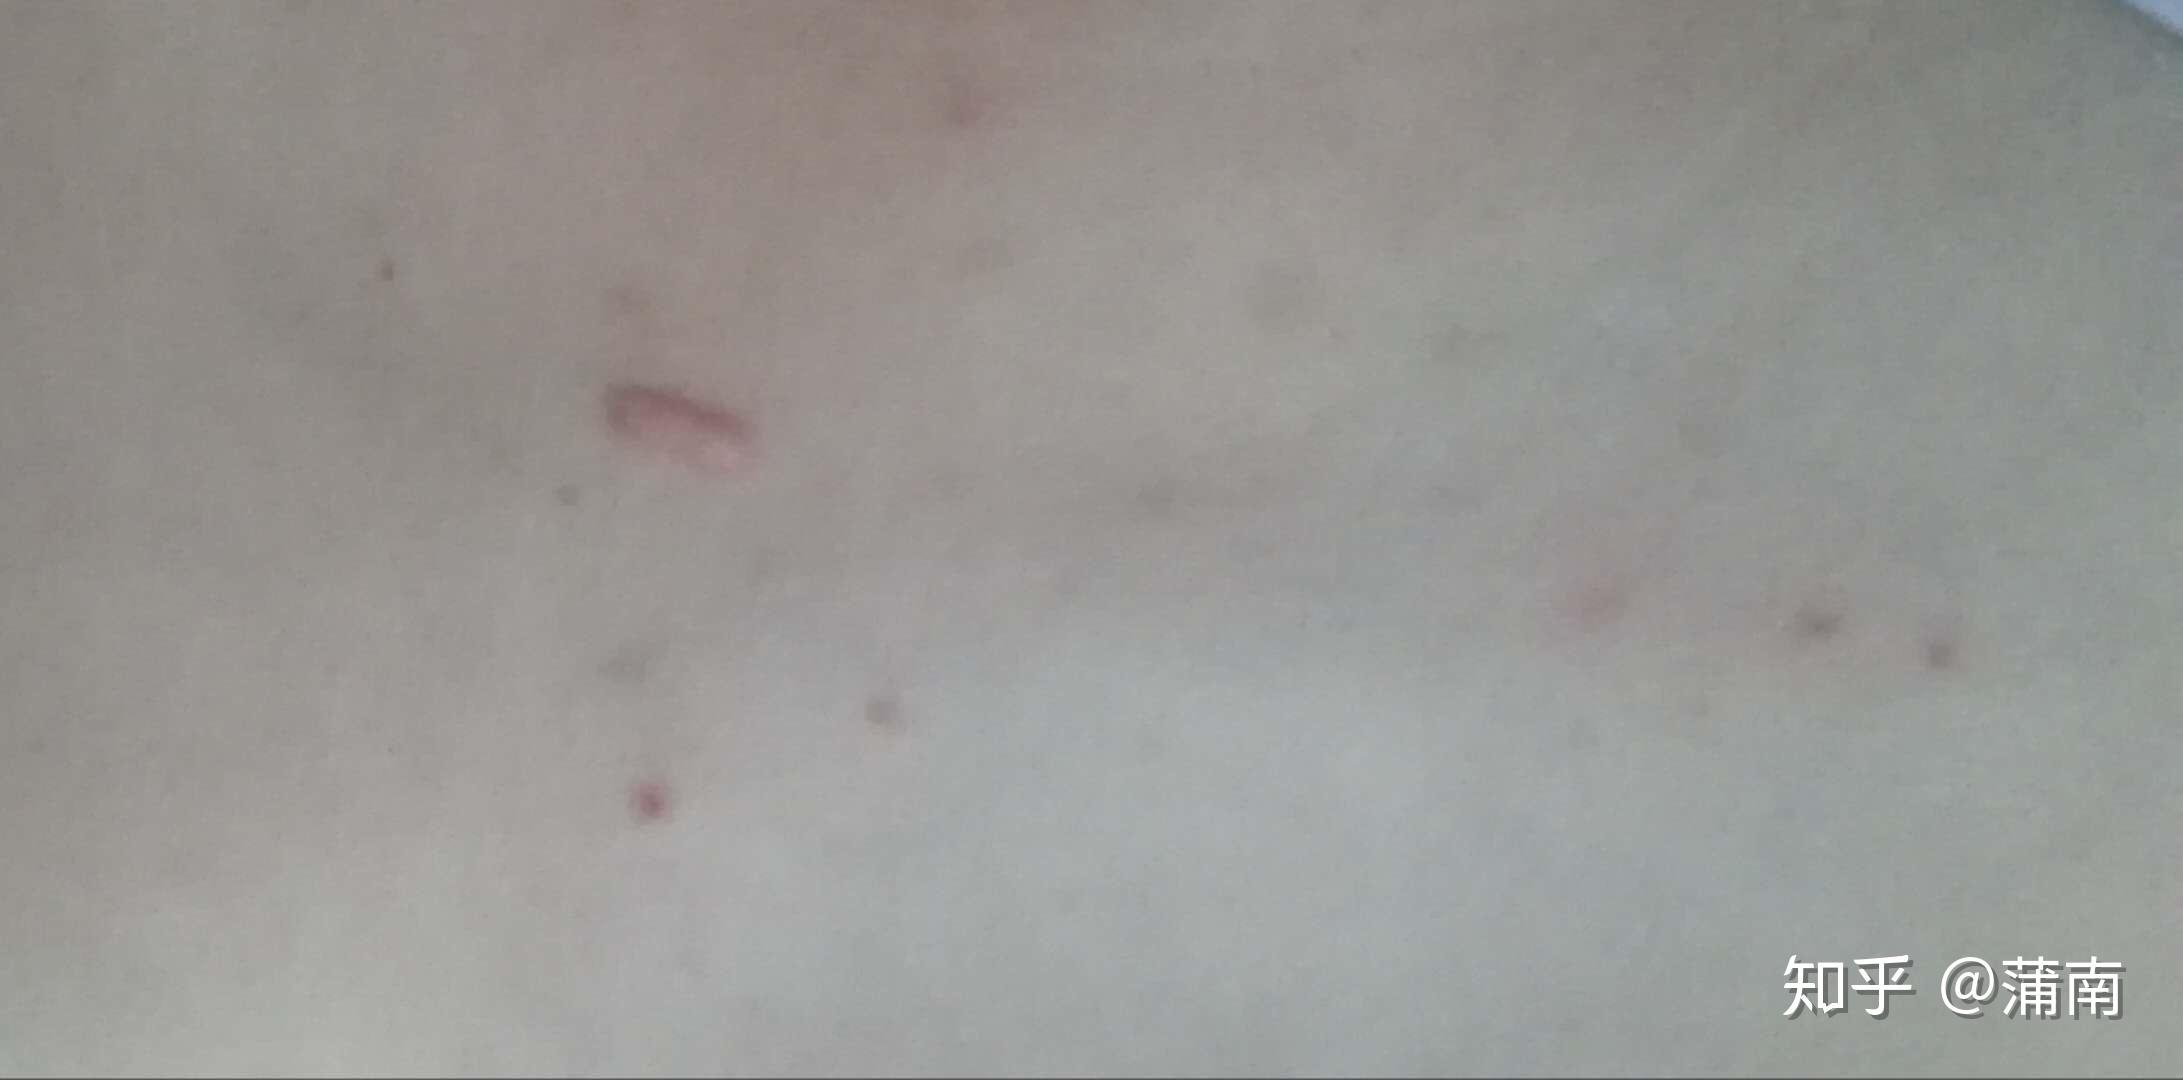 皮肤上凸起的小红点该怎么治疗？ - 知乎